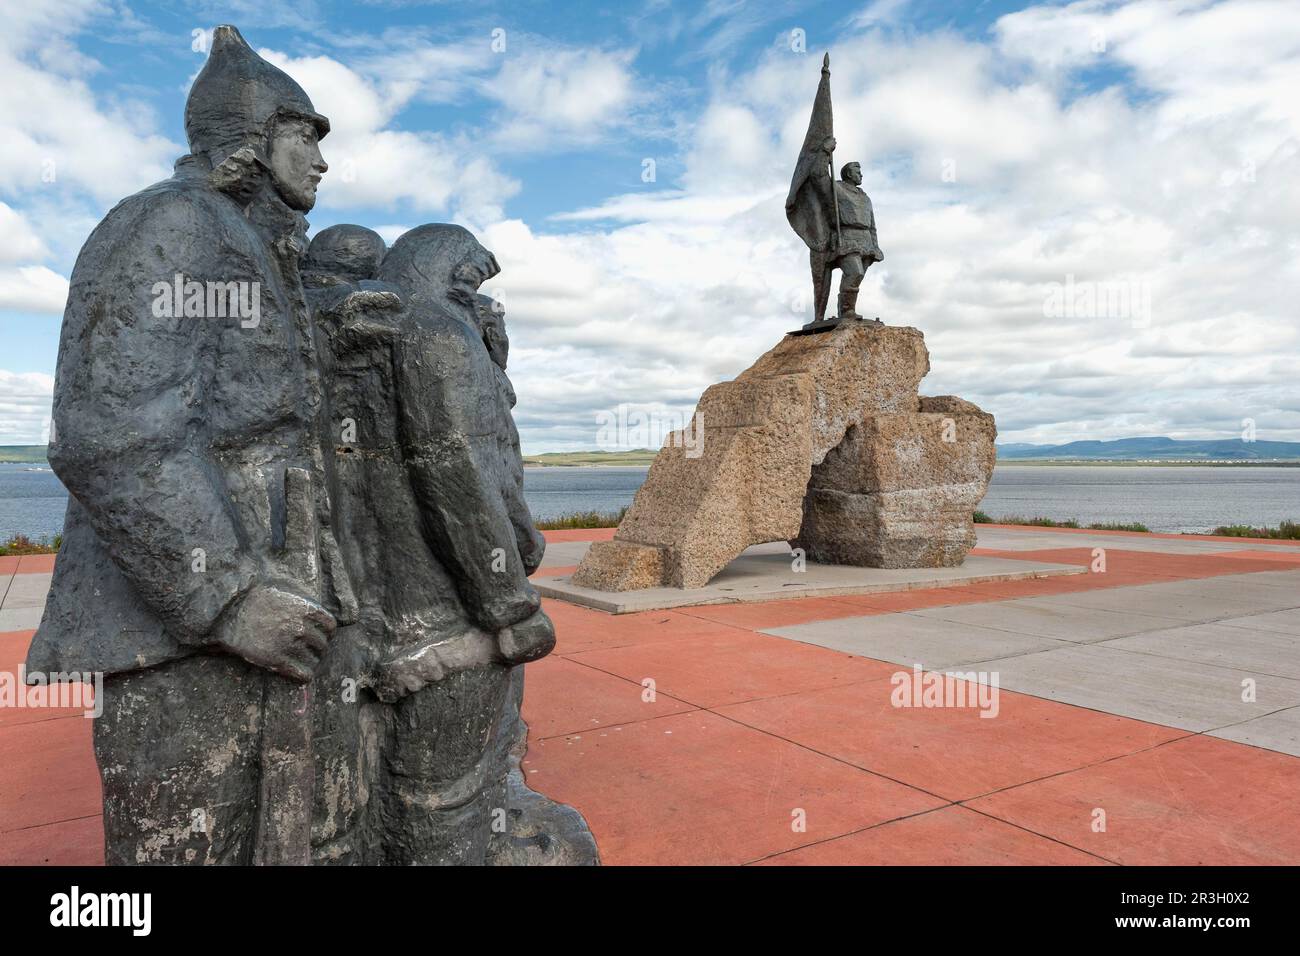 Monument à la première Revkom (premier Comité révolutionnaire), ville sibérienne d'Anadyr, province de Chukotka, extrême-Orient russe Banque D'Images